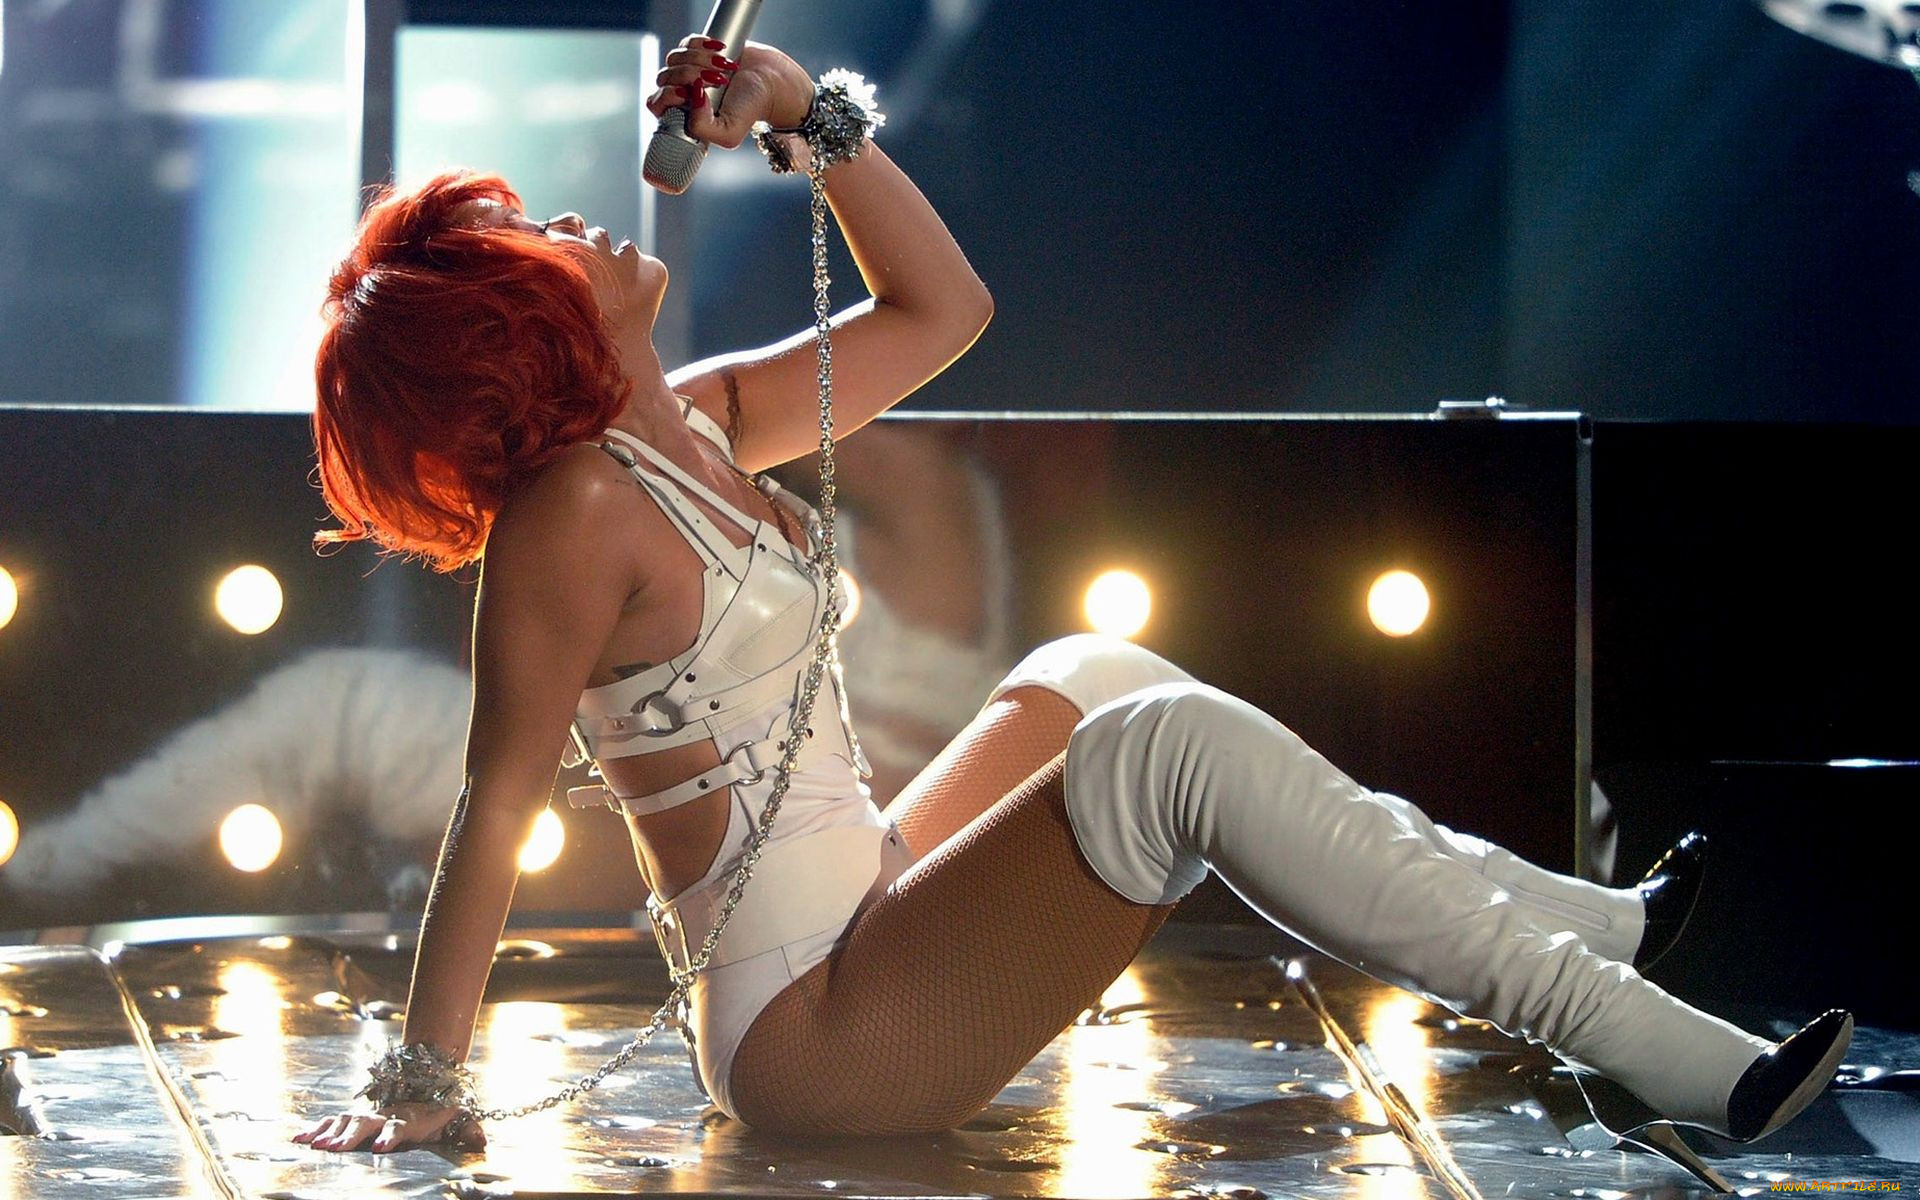 Обои Rihanna Музыка Rihanna, обои для рабочего стола, фотогр